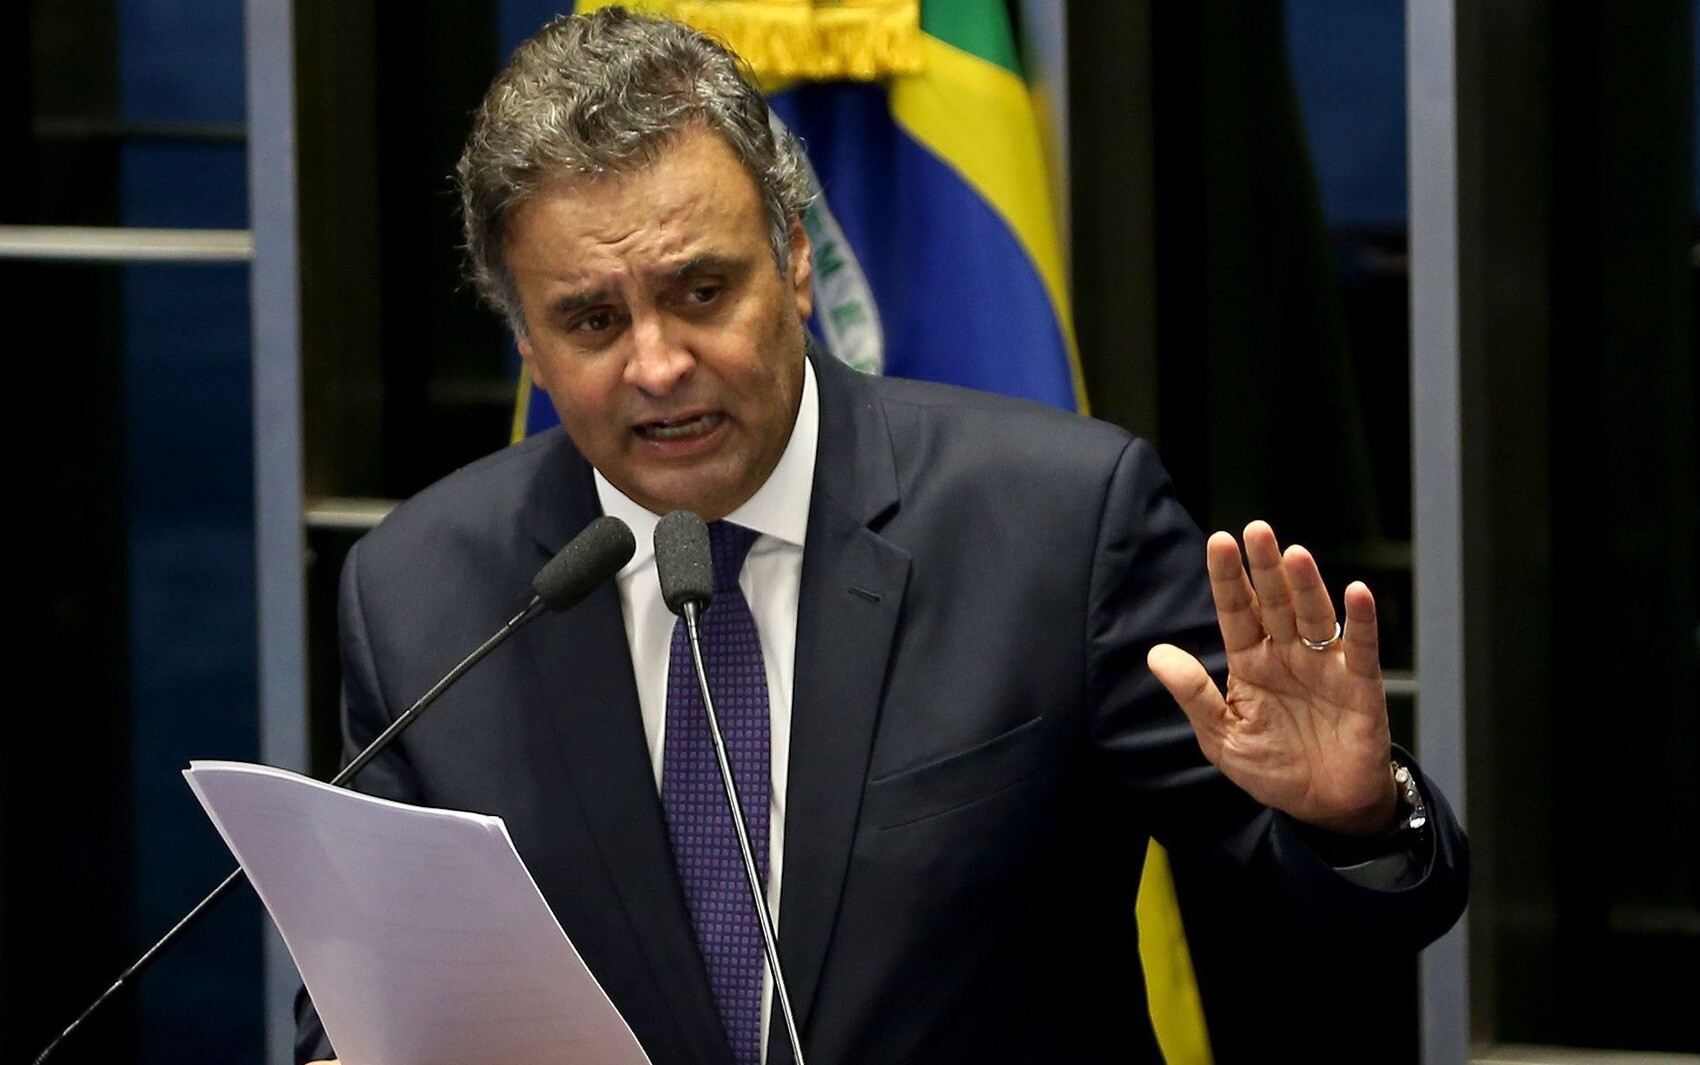 STF julga pedido de prisão preventiva de Aécio Neves